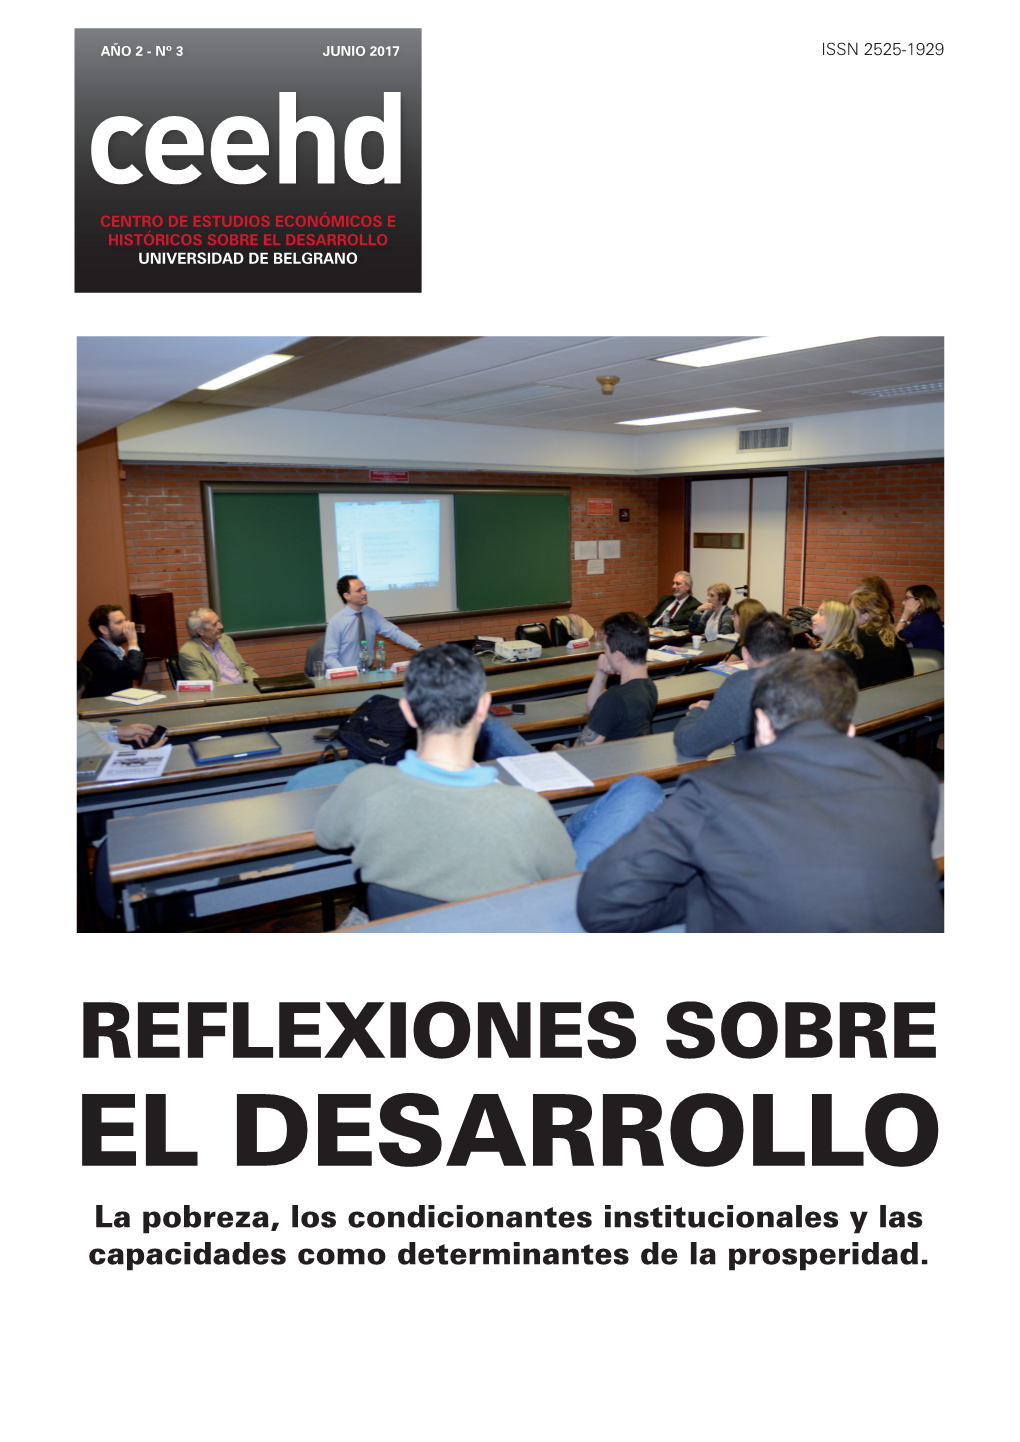 Ceehd Centro De Estudios Económicos E Históricos Sobre El Desarrollo Universidad De Belgrano